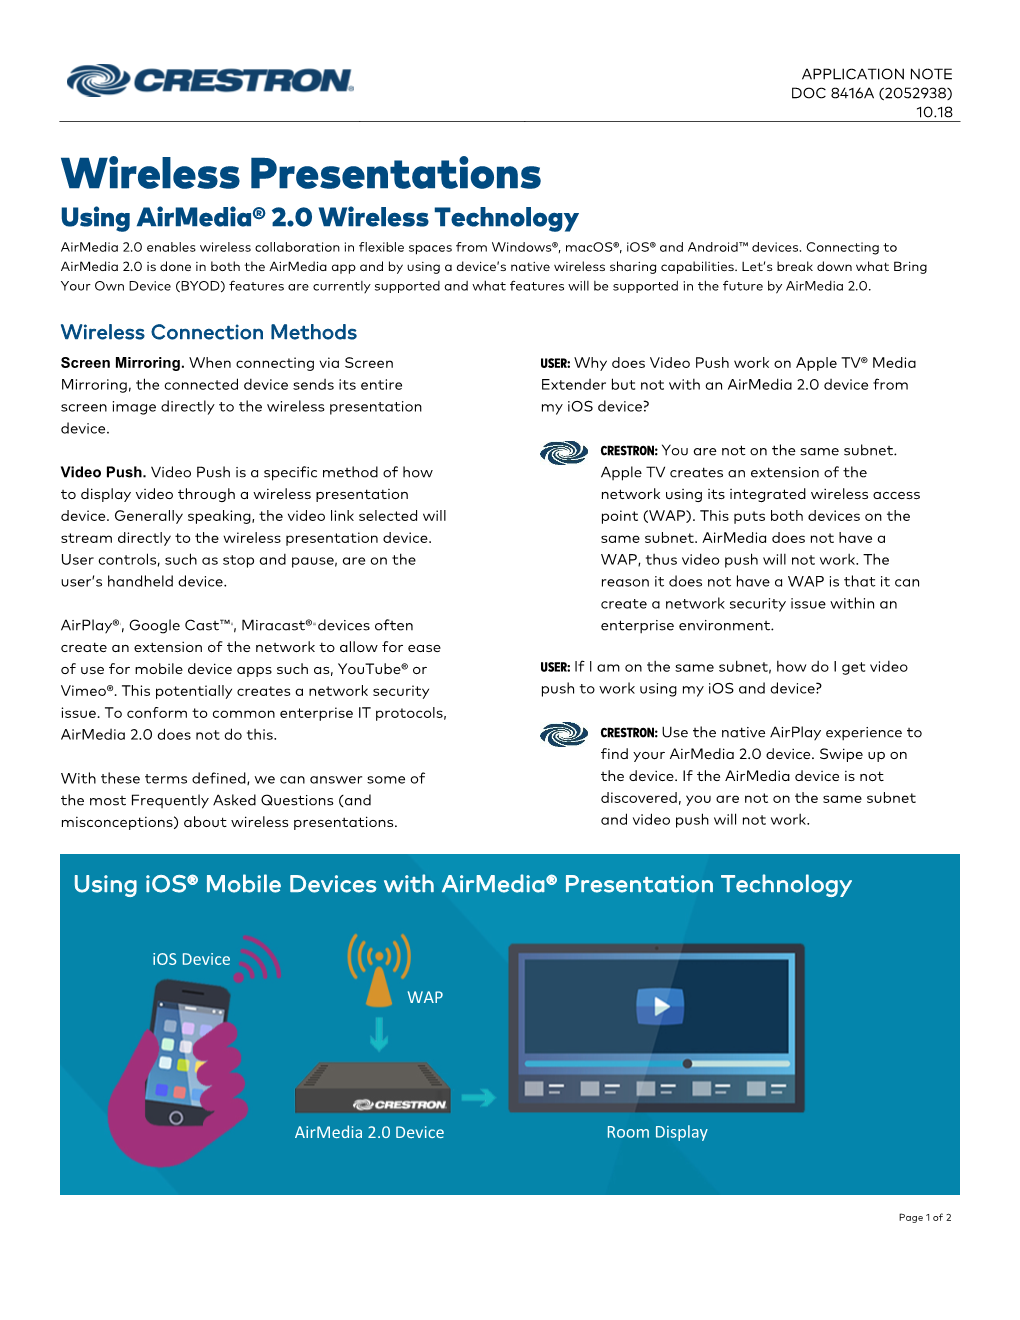 Airmedia 2.0 Wireless Presentations